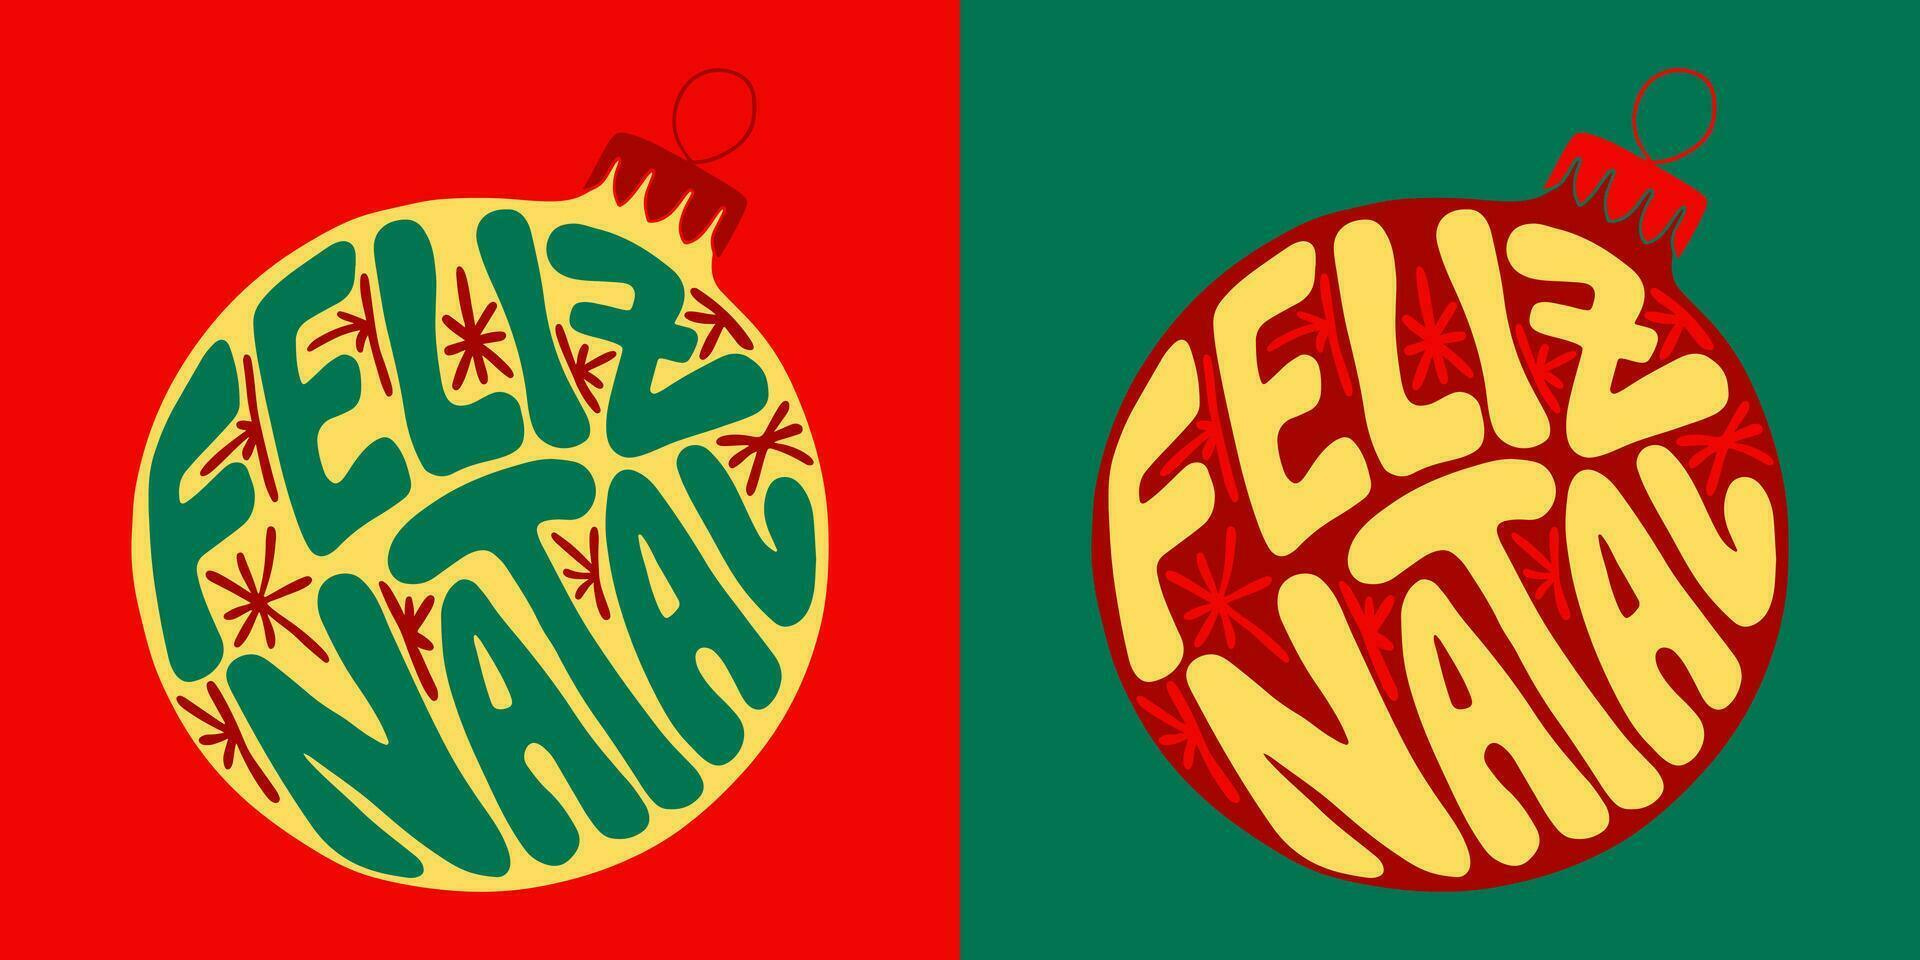 Navidad maravilloso letras cita. mano dibujado eslogan alegre Navidad en portugués en un Navidad pelota forma. moderno impresión diseño en retro estilo para carteles, tarjetas, camisa impresión social medios de comunicación gráficos vector